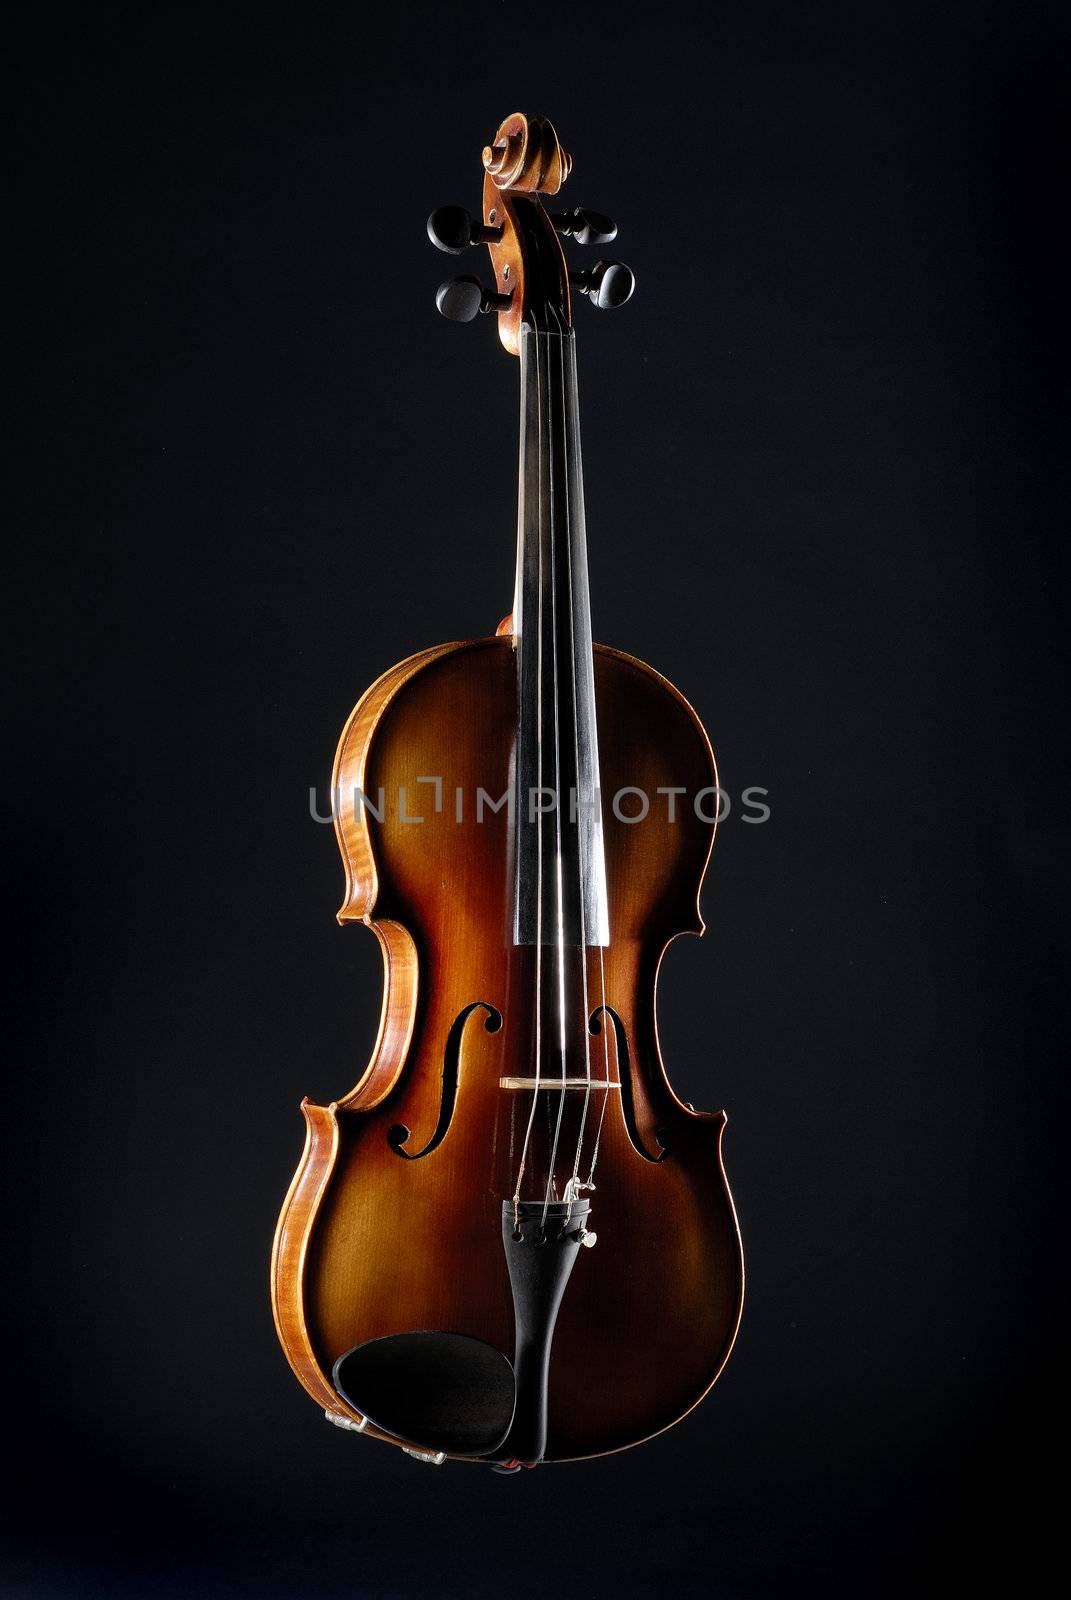 Old violin against black background